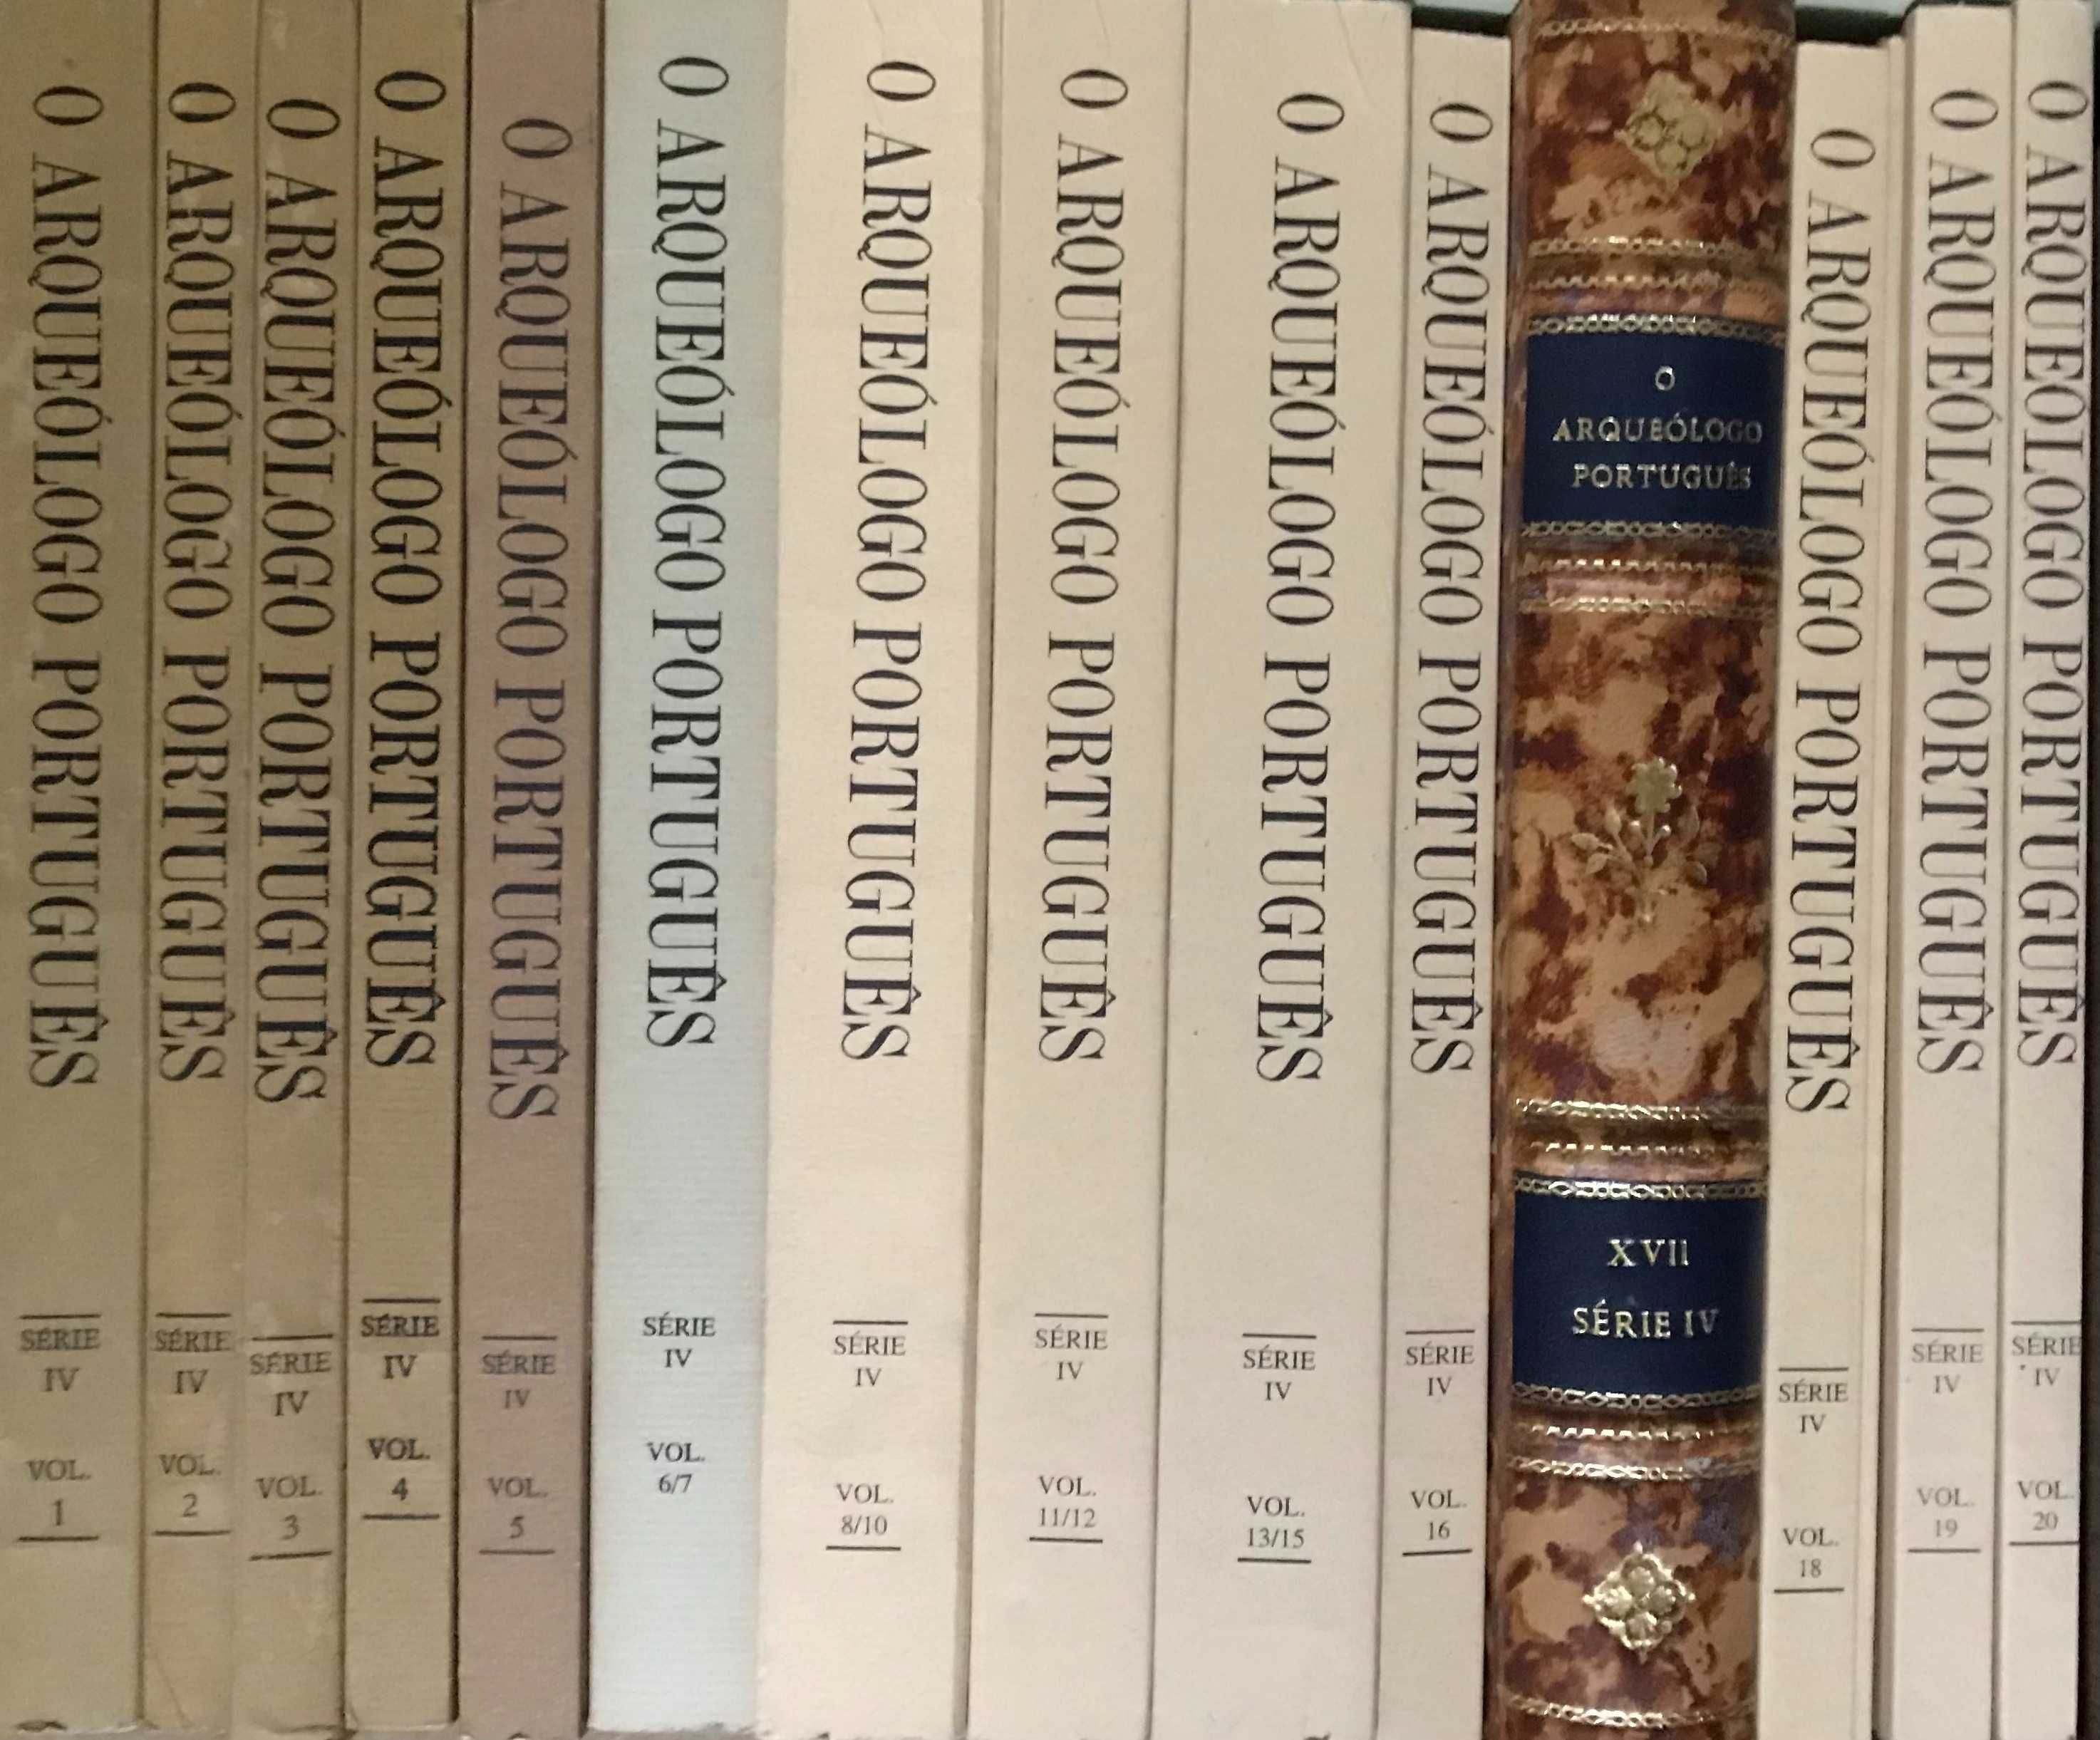 "O Archeologo Português" - Séries I, III e IV